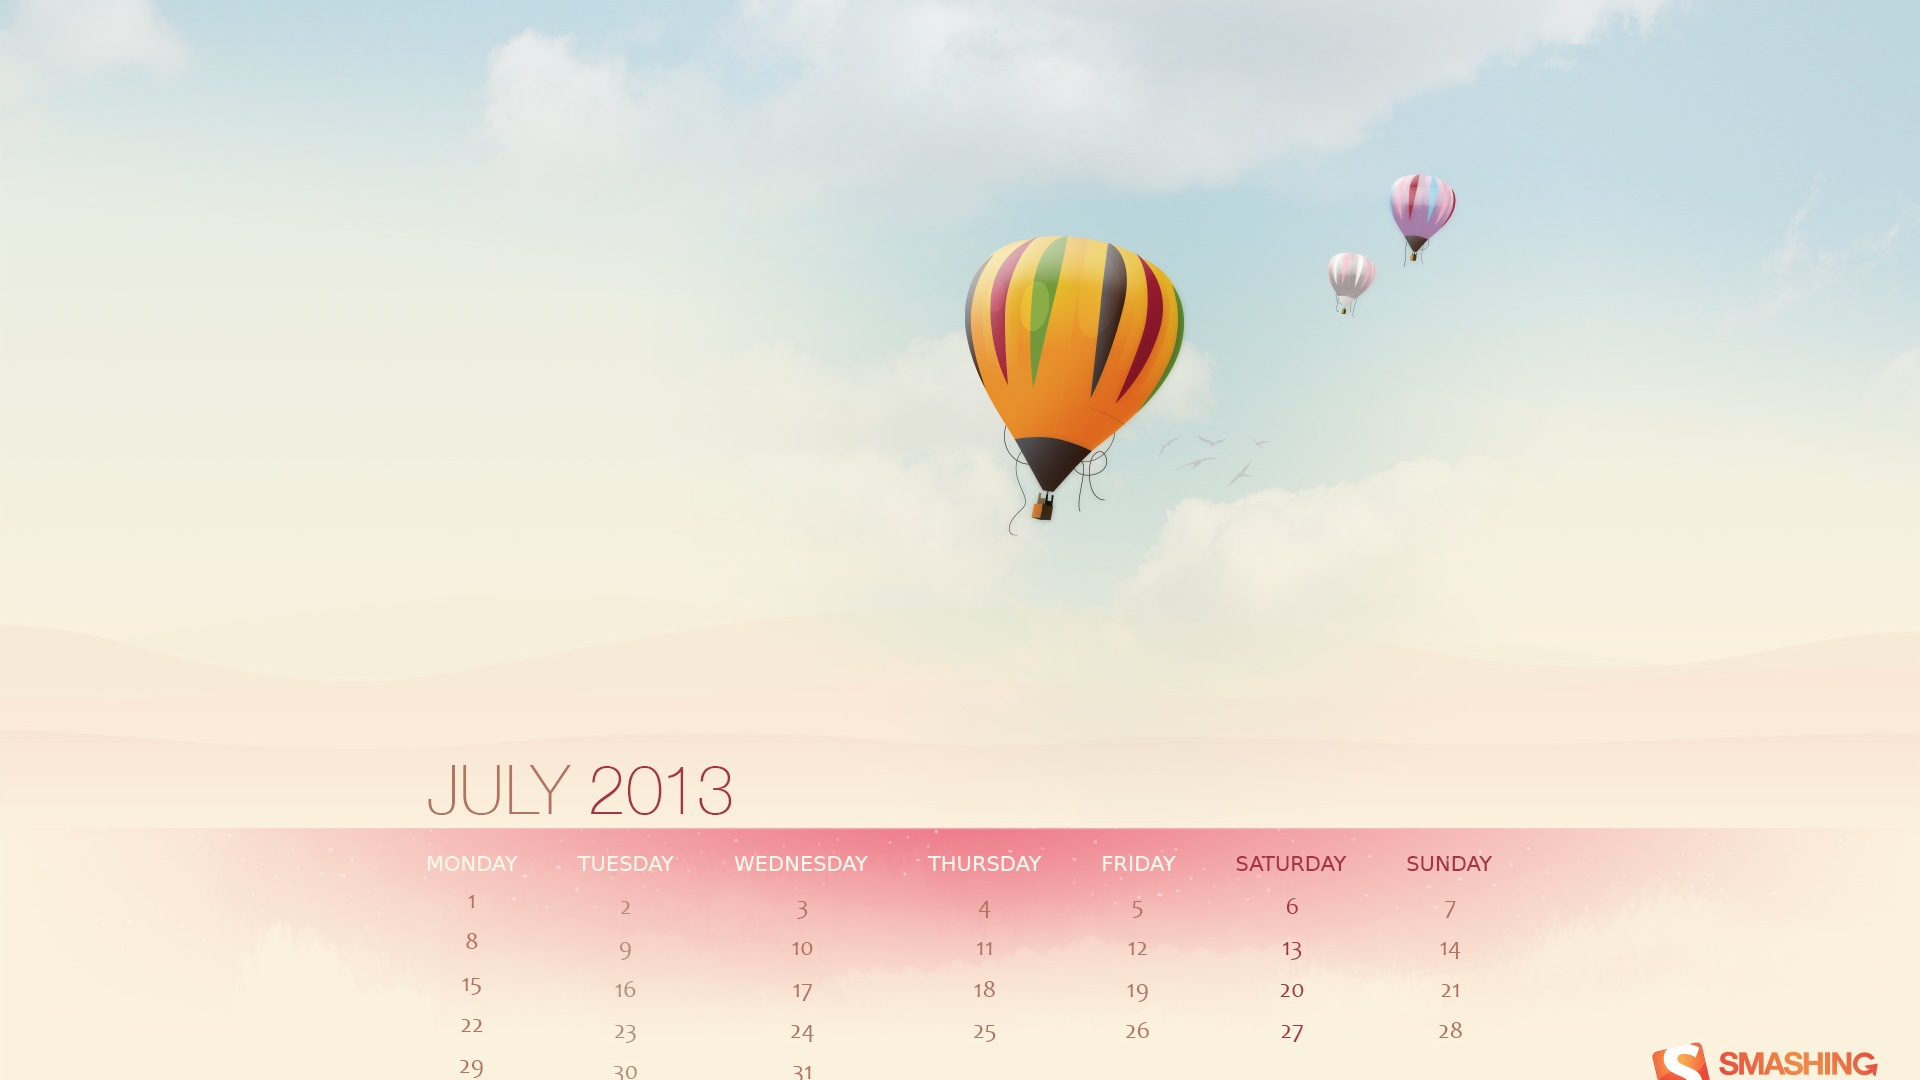 July 2013 calendar wallpaper (1) #18 - 1920x1080